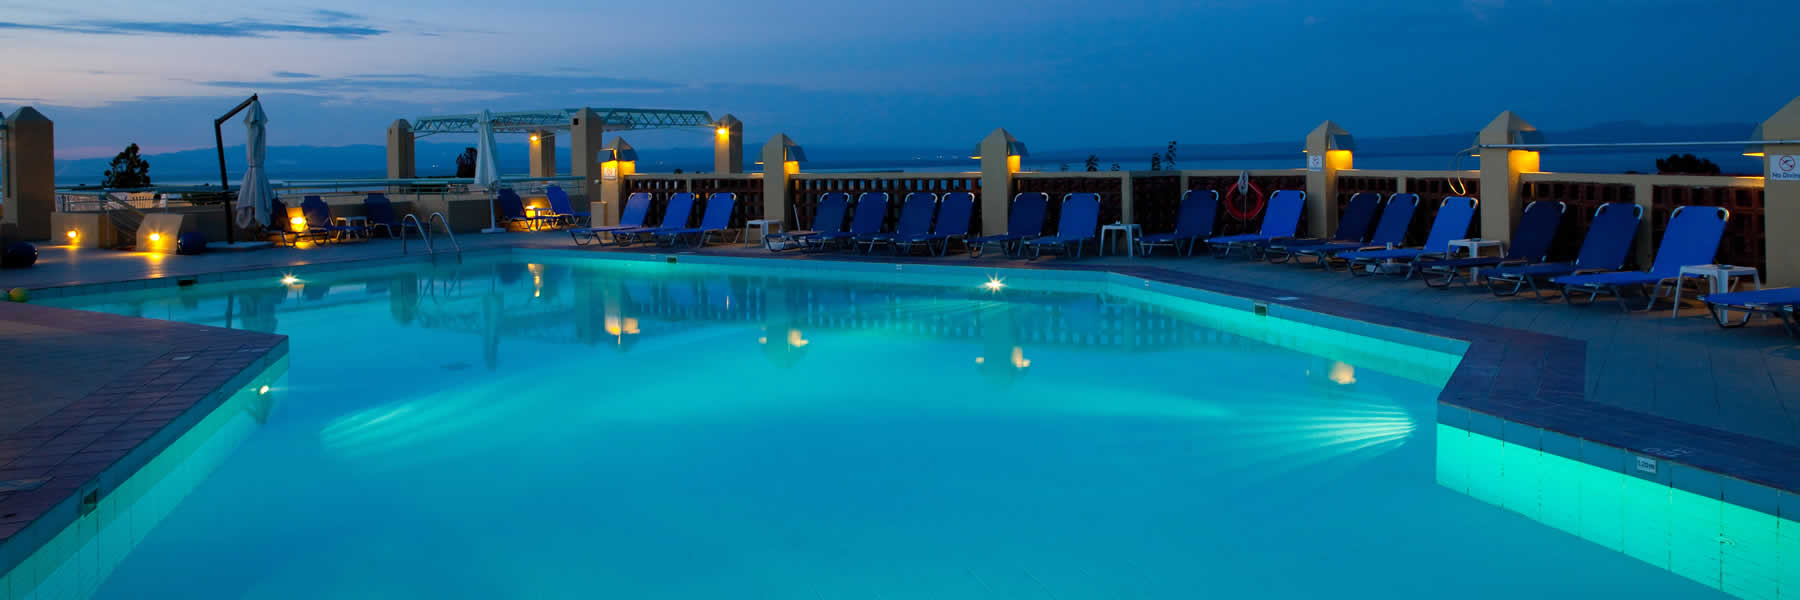 Ξενοδοχείο Χαλκιδική Daphne Holiday Club